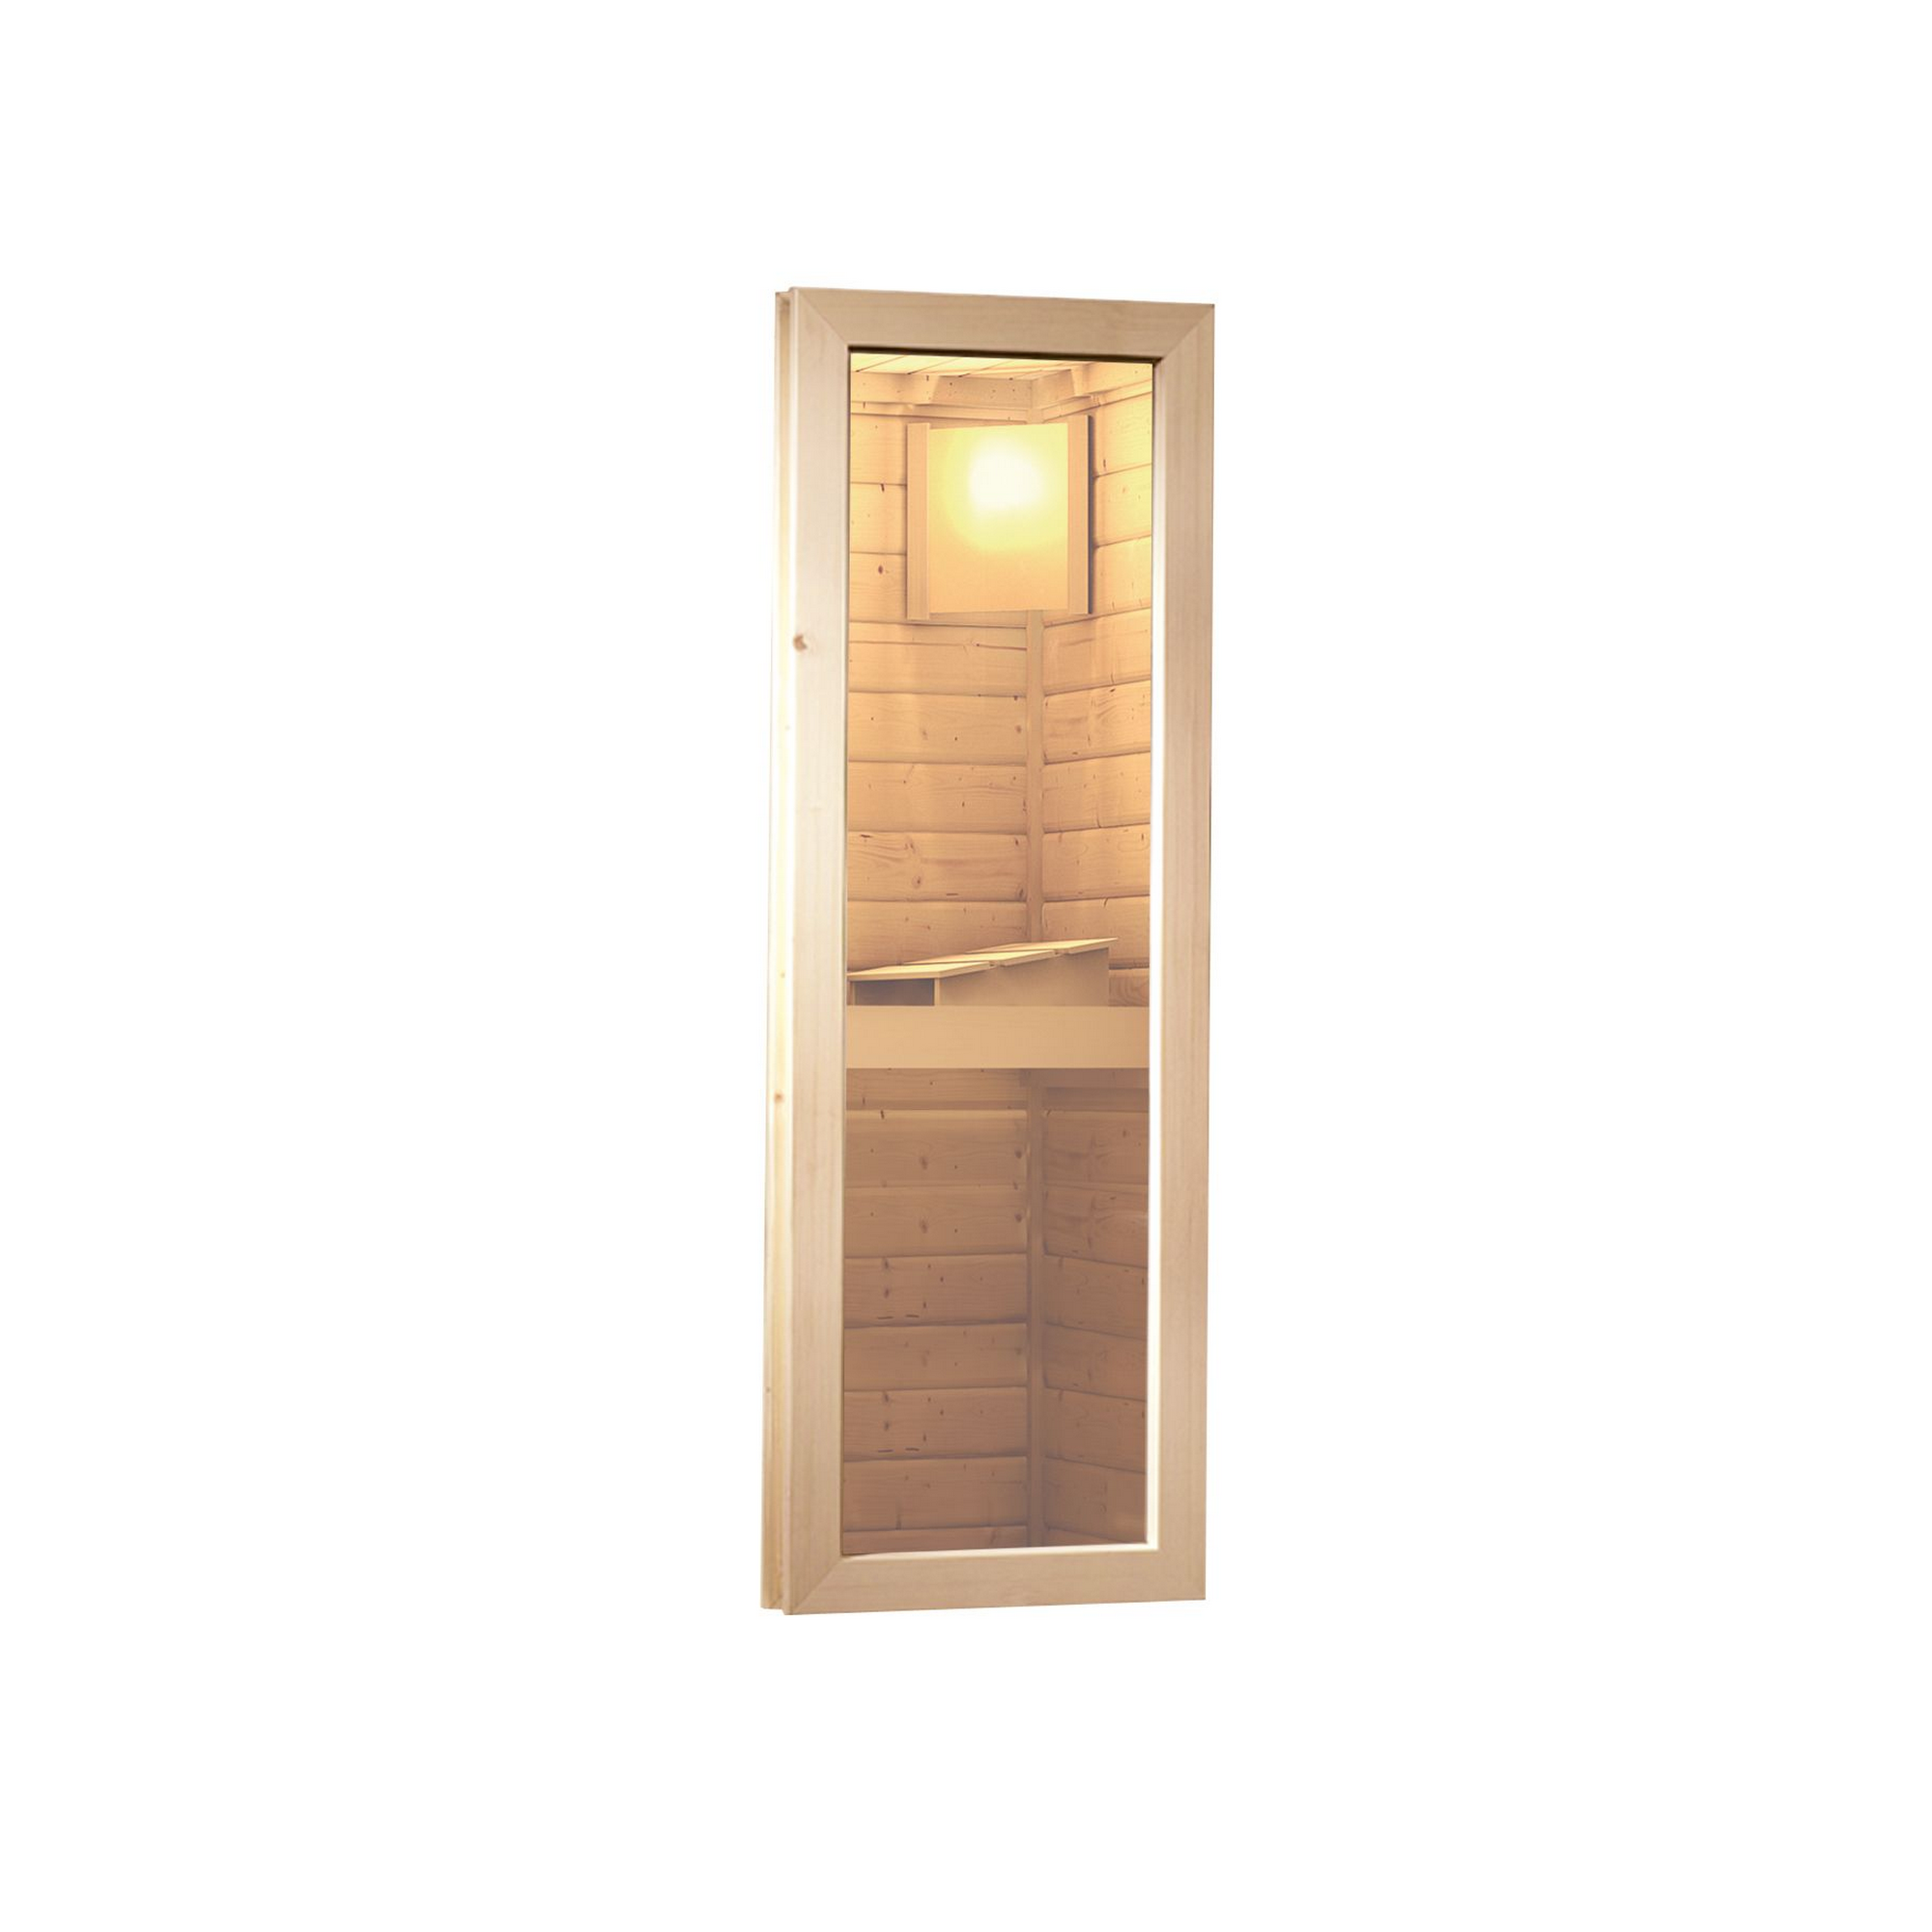 Saunahaus 'Skrollan 2' naturbelassen mit klassischer Tür und Holzofen 336 x 231 x 227 cm + product picture